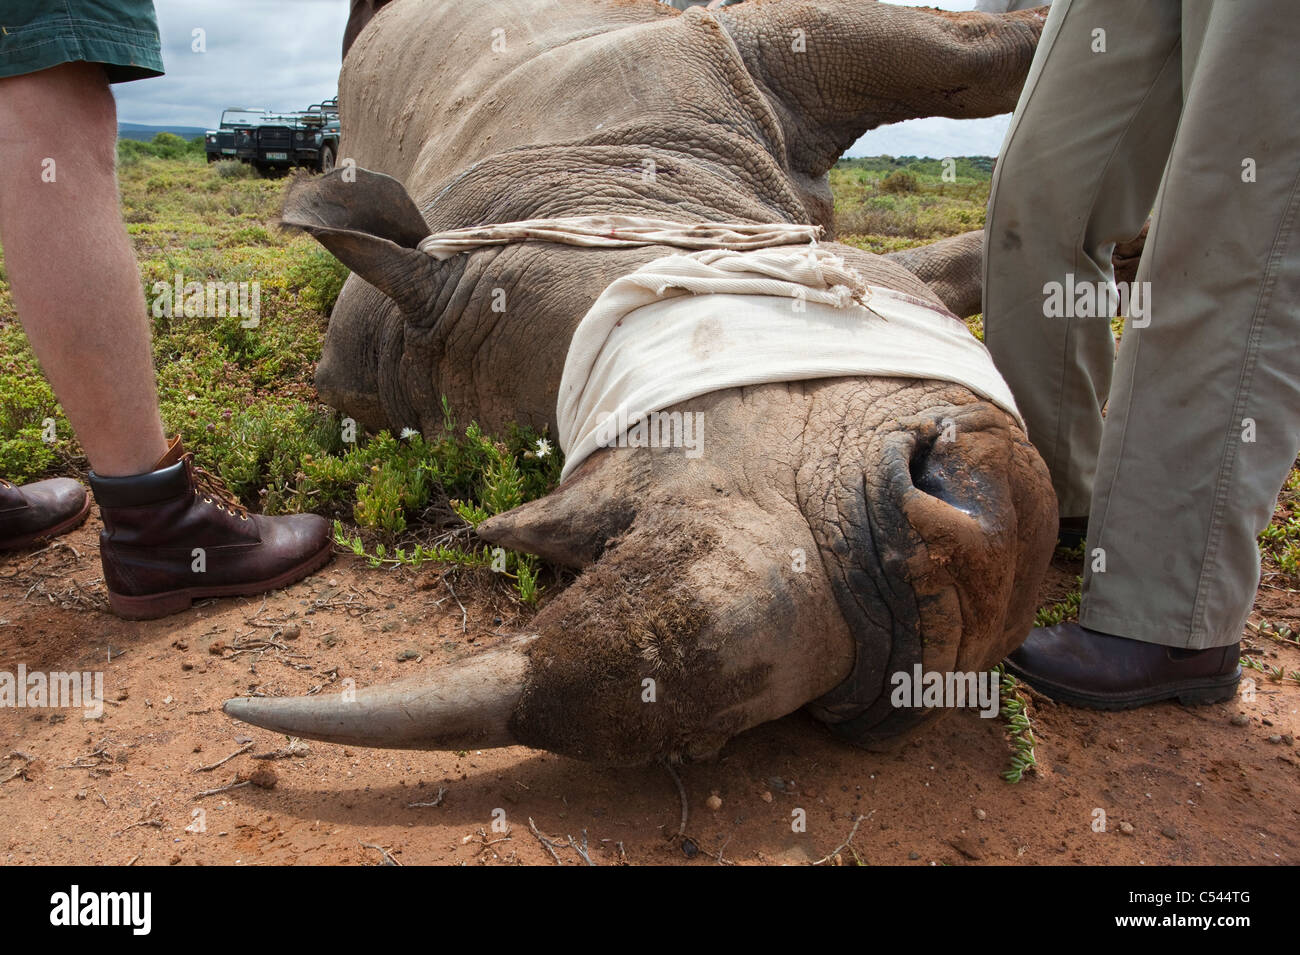 Tranquilised rinoceronte blanco, antes de la cirugía para reparar la lesión, Kwandwe Private Game Reserve, Eastern Cape, Sudáfrica Foto de stock